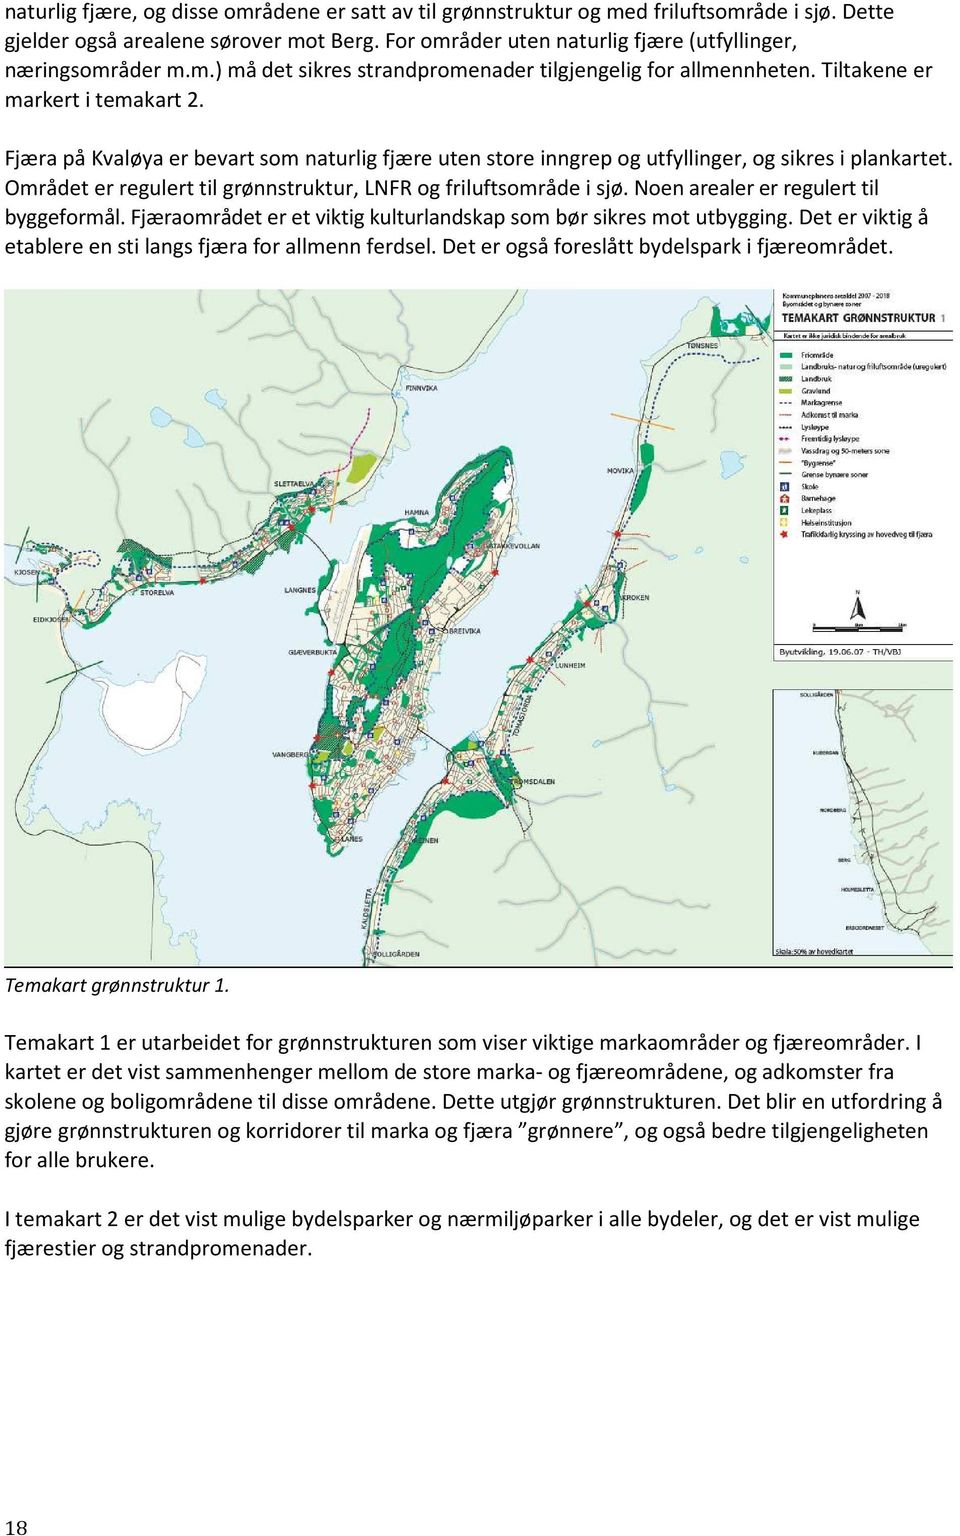 Fjæra på Kvaløya er bevart som naturlig fjære uten store inngrep og utfyllinger, og sikres i plankartet. Området er regulert til grønnstruktur, LNFR og friluftsområde i sjø.